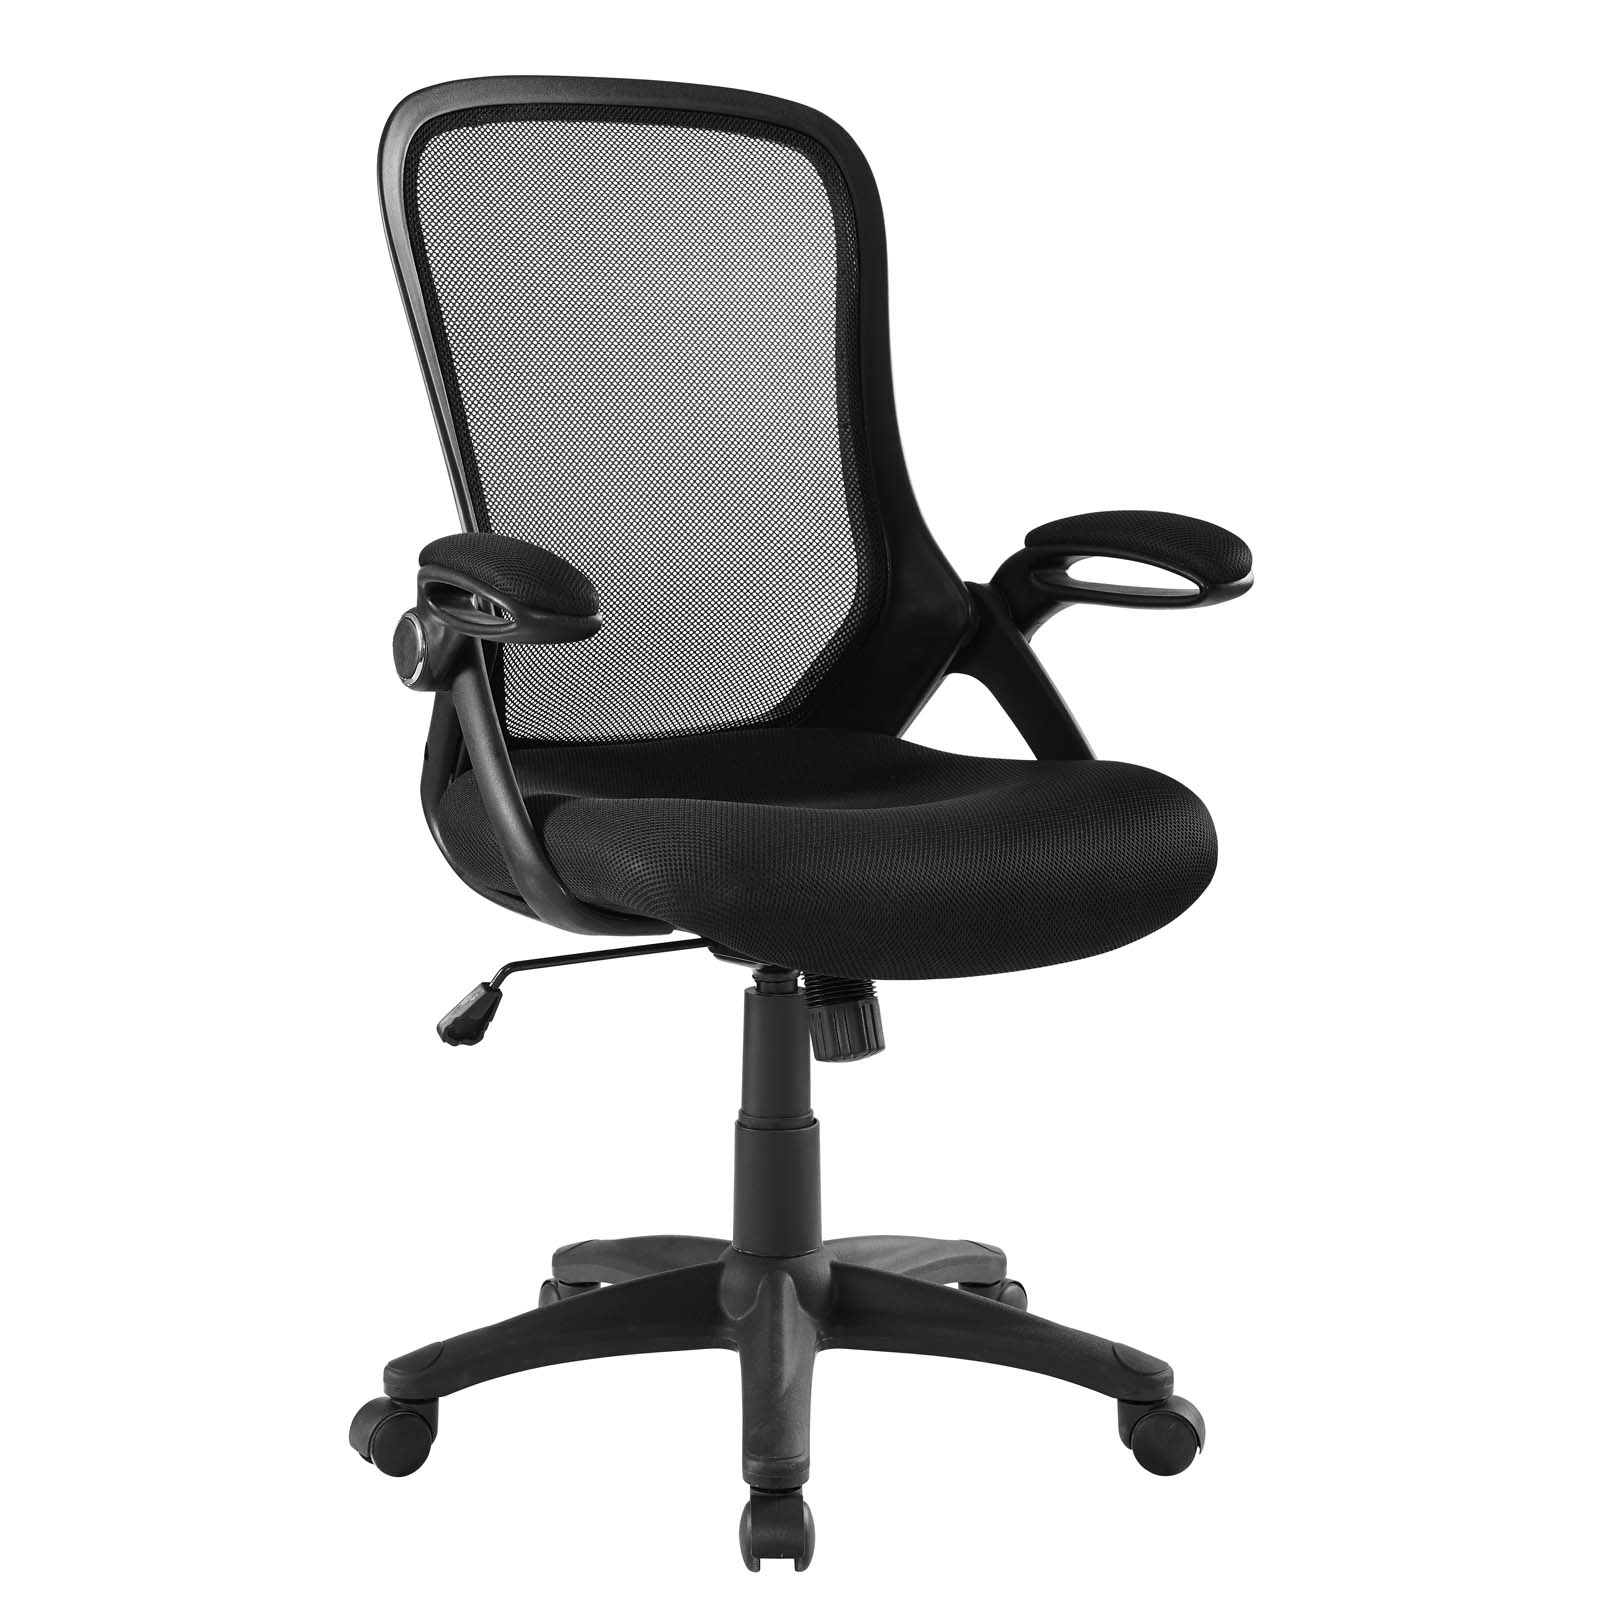 Assert Mesh Office Chair Black by Modway